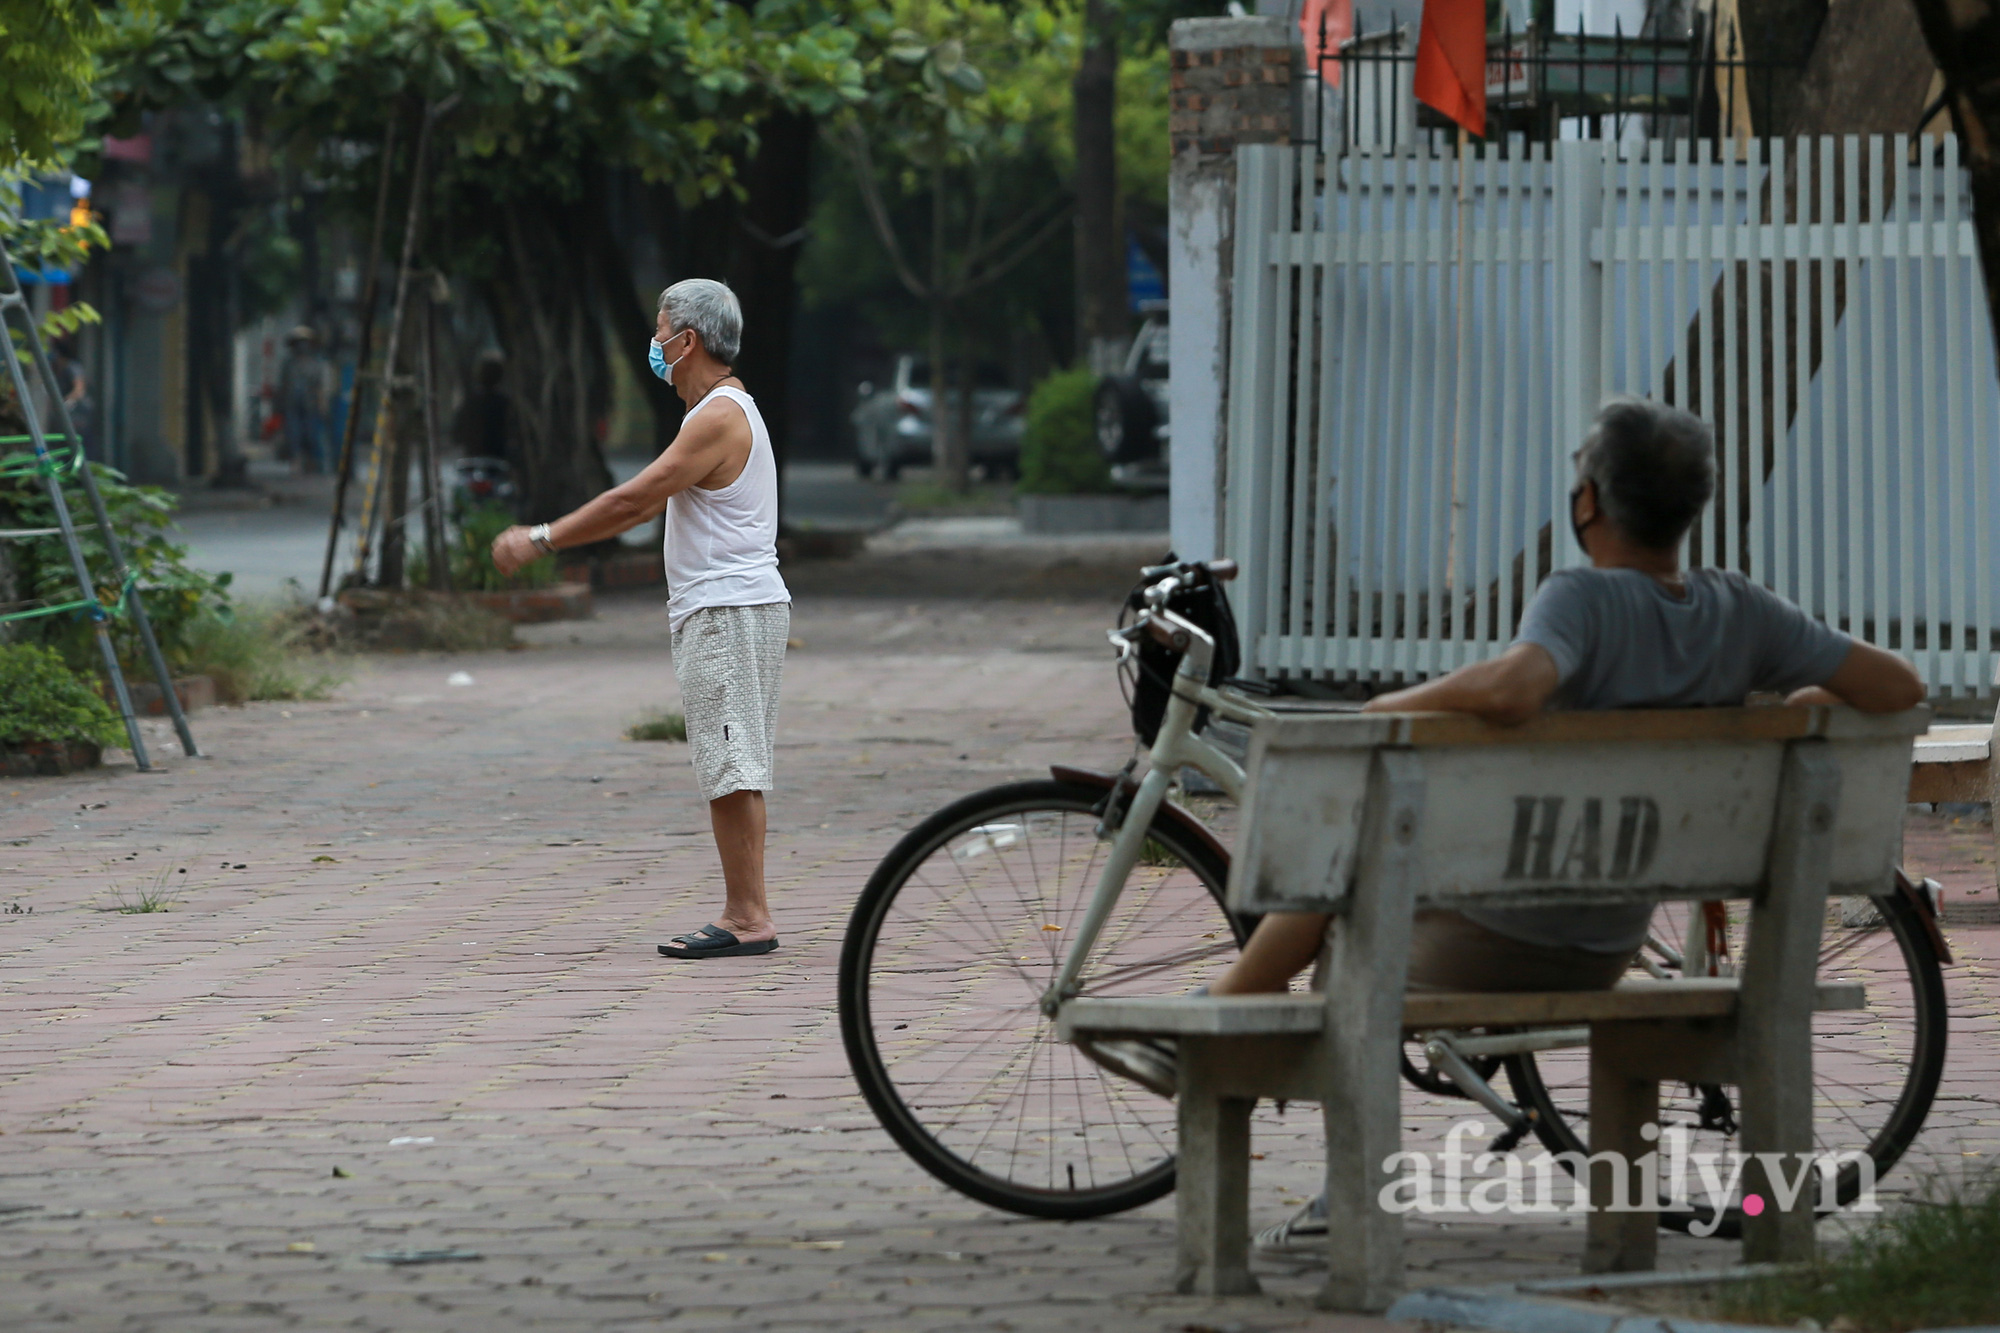 Hà Nội ngày thứ 17 giãn cách xã hội, nhiều người dân vẫn ra đường tập thể dục buổi sáng, có người treo quả bí đỏ trước xe để đạp xe đạp - Ảnh 9.